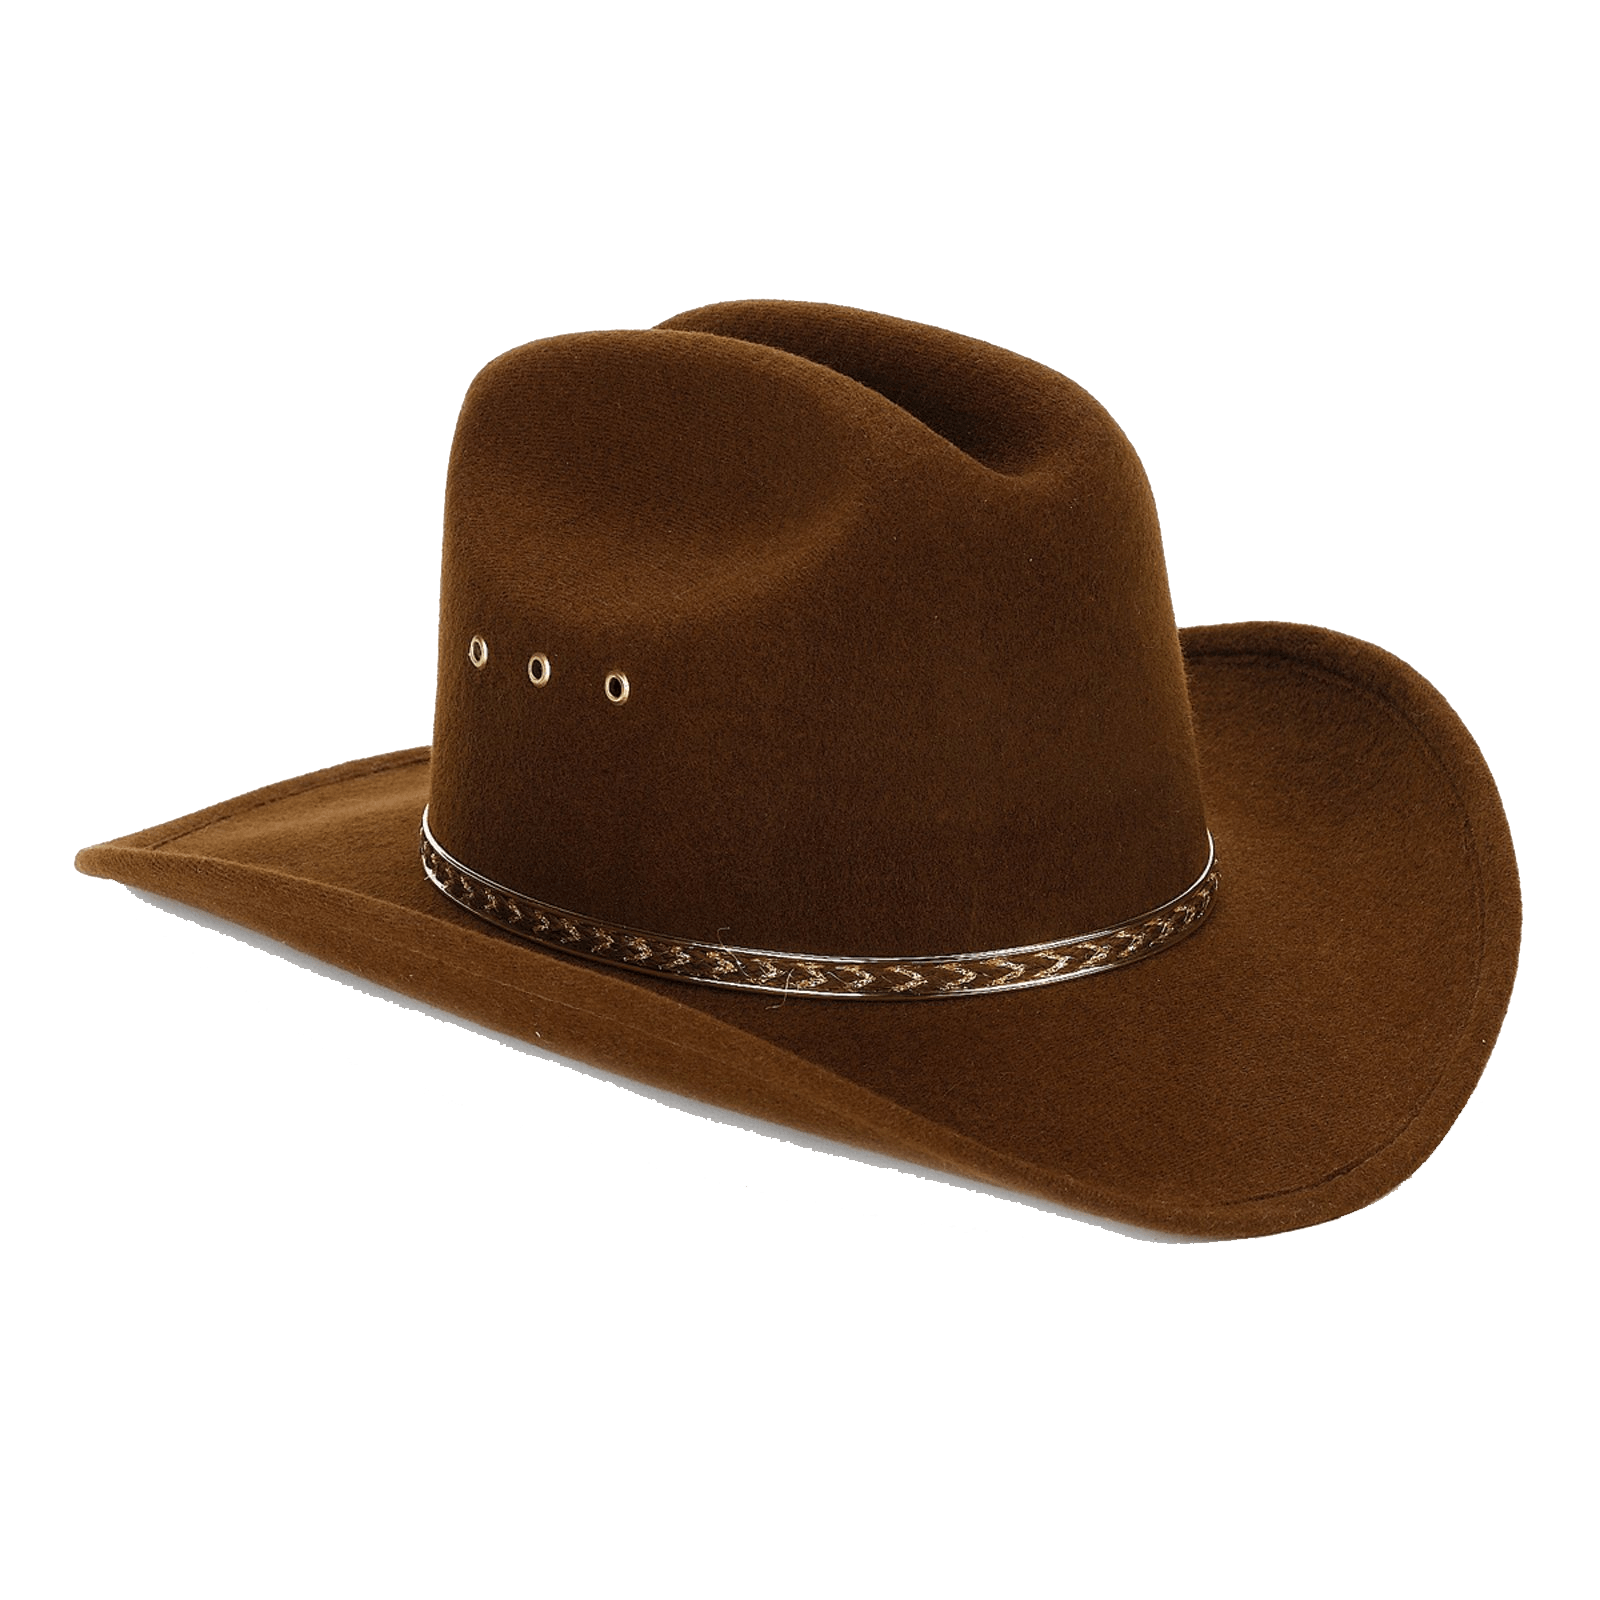 Imagem de alta qualidade do chapéu de cowboy marrom